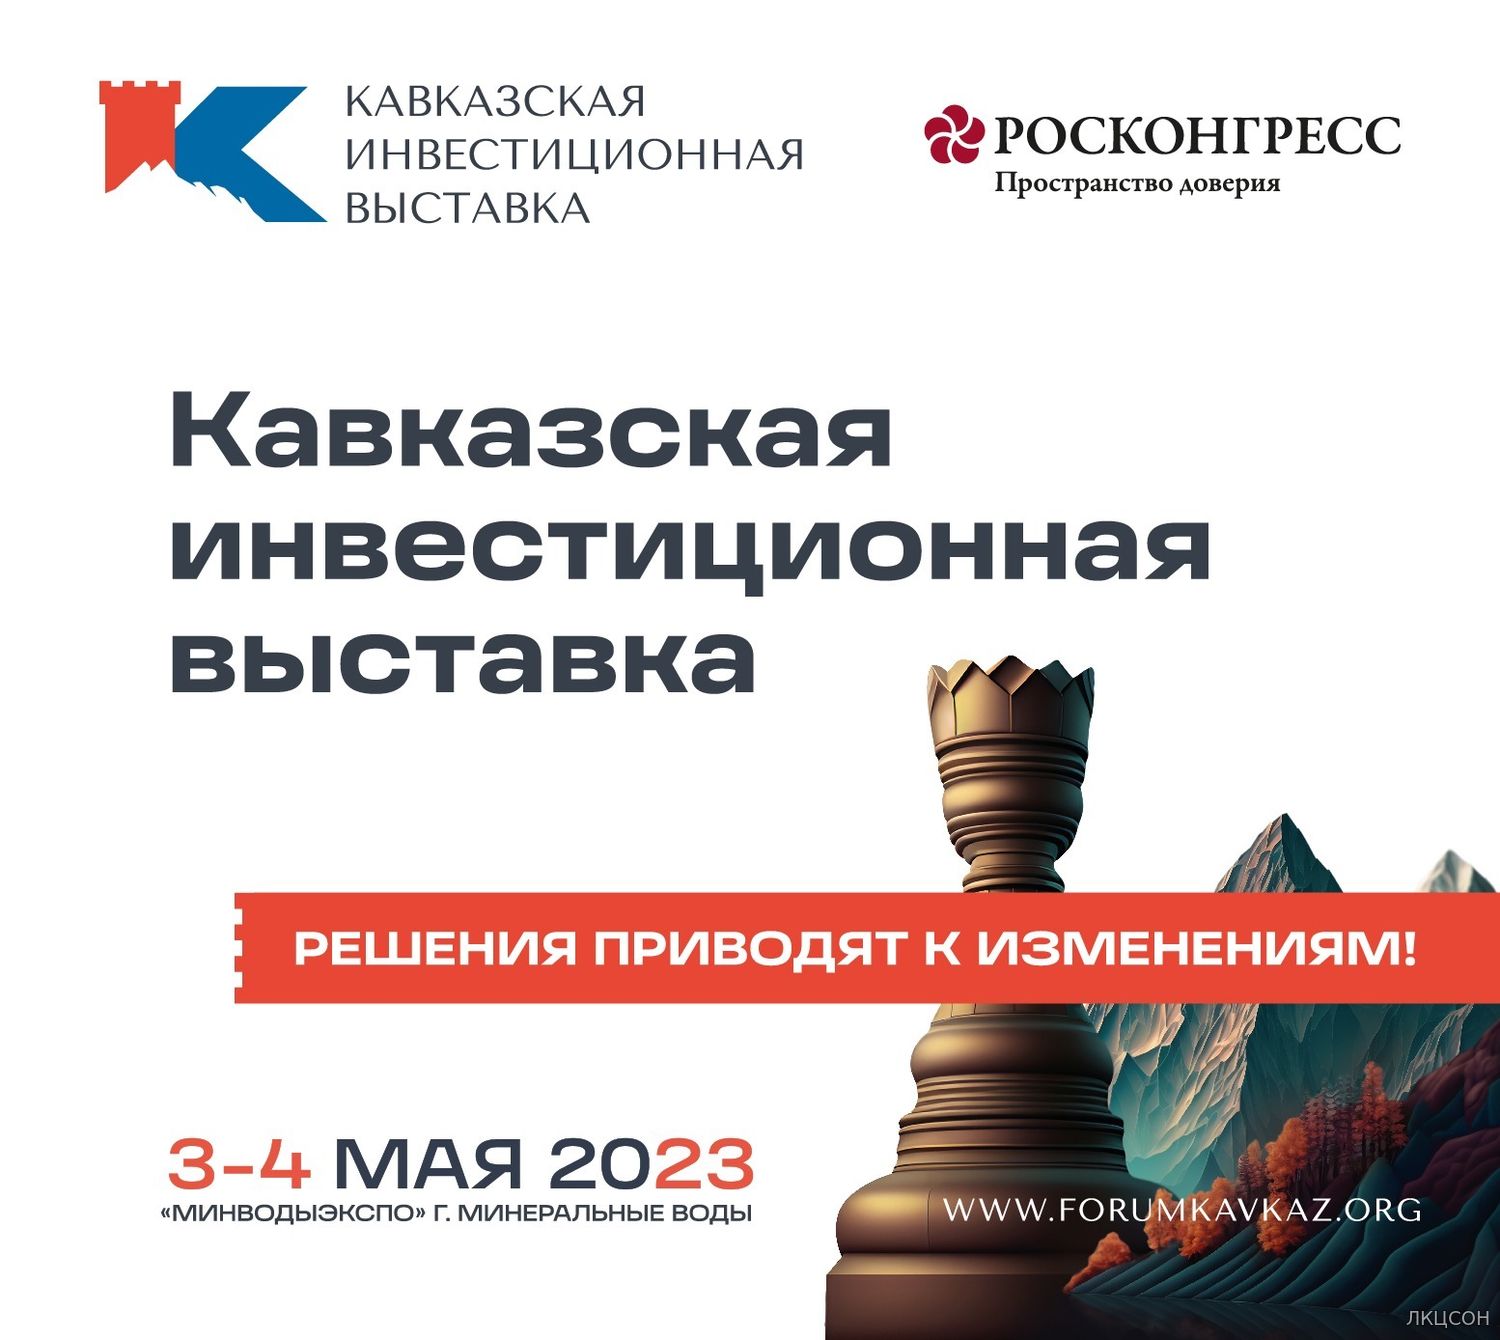 Первая Кавказская инвестиционная выставка